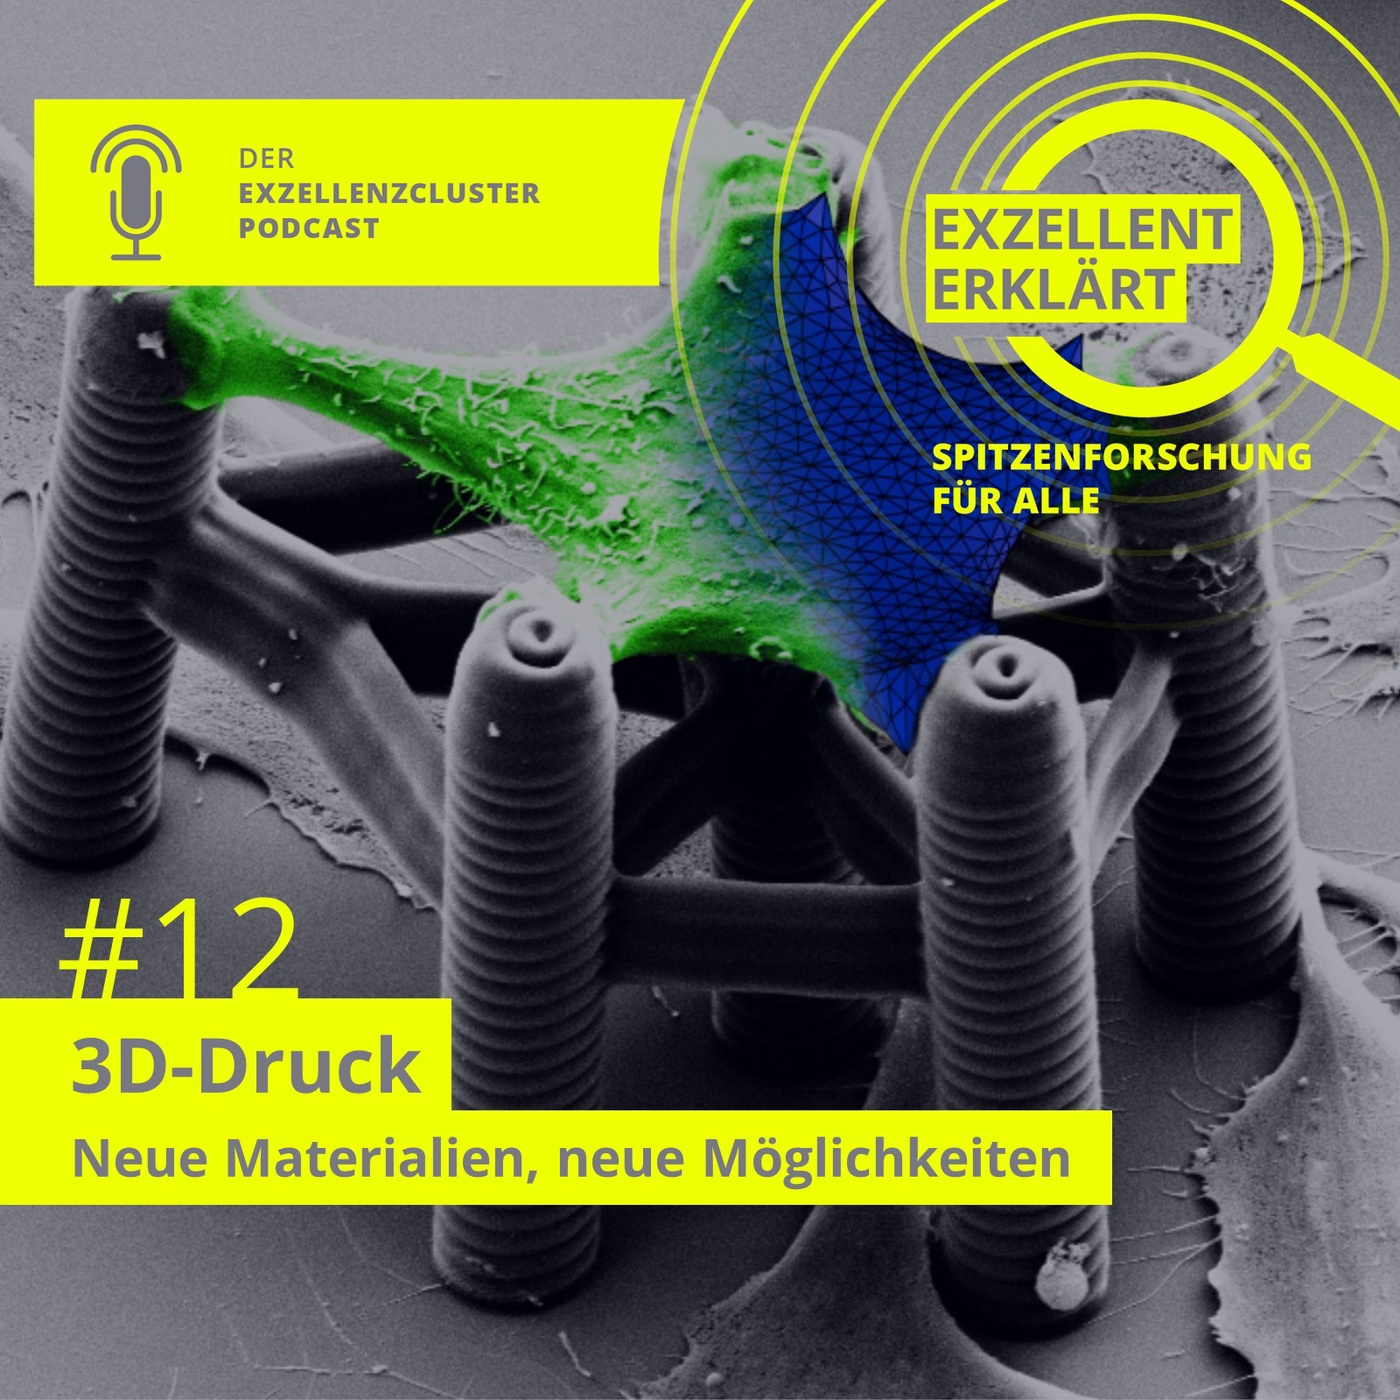 3D-Druck – Neue Materialien, neue Möglichkeiten